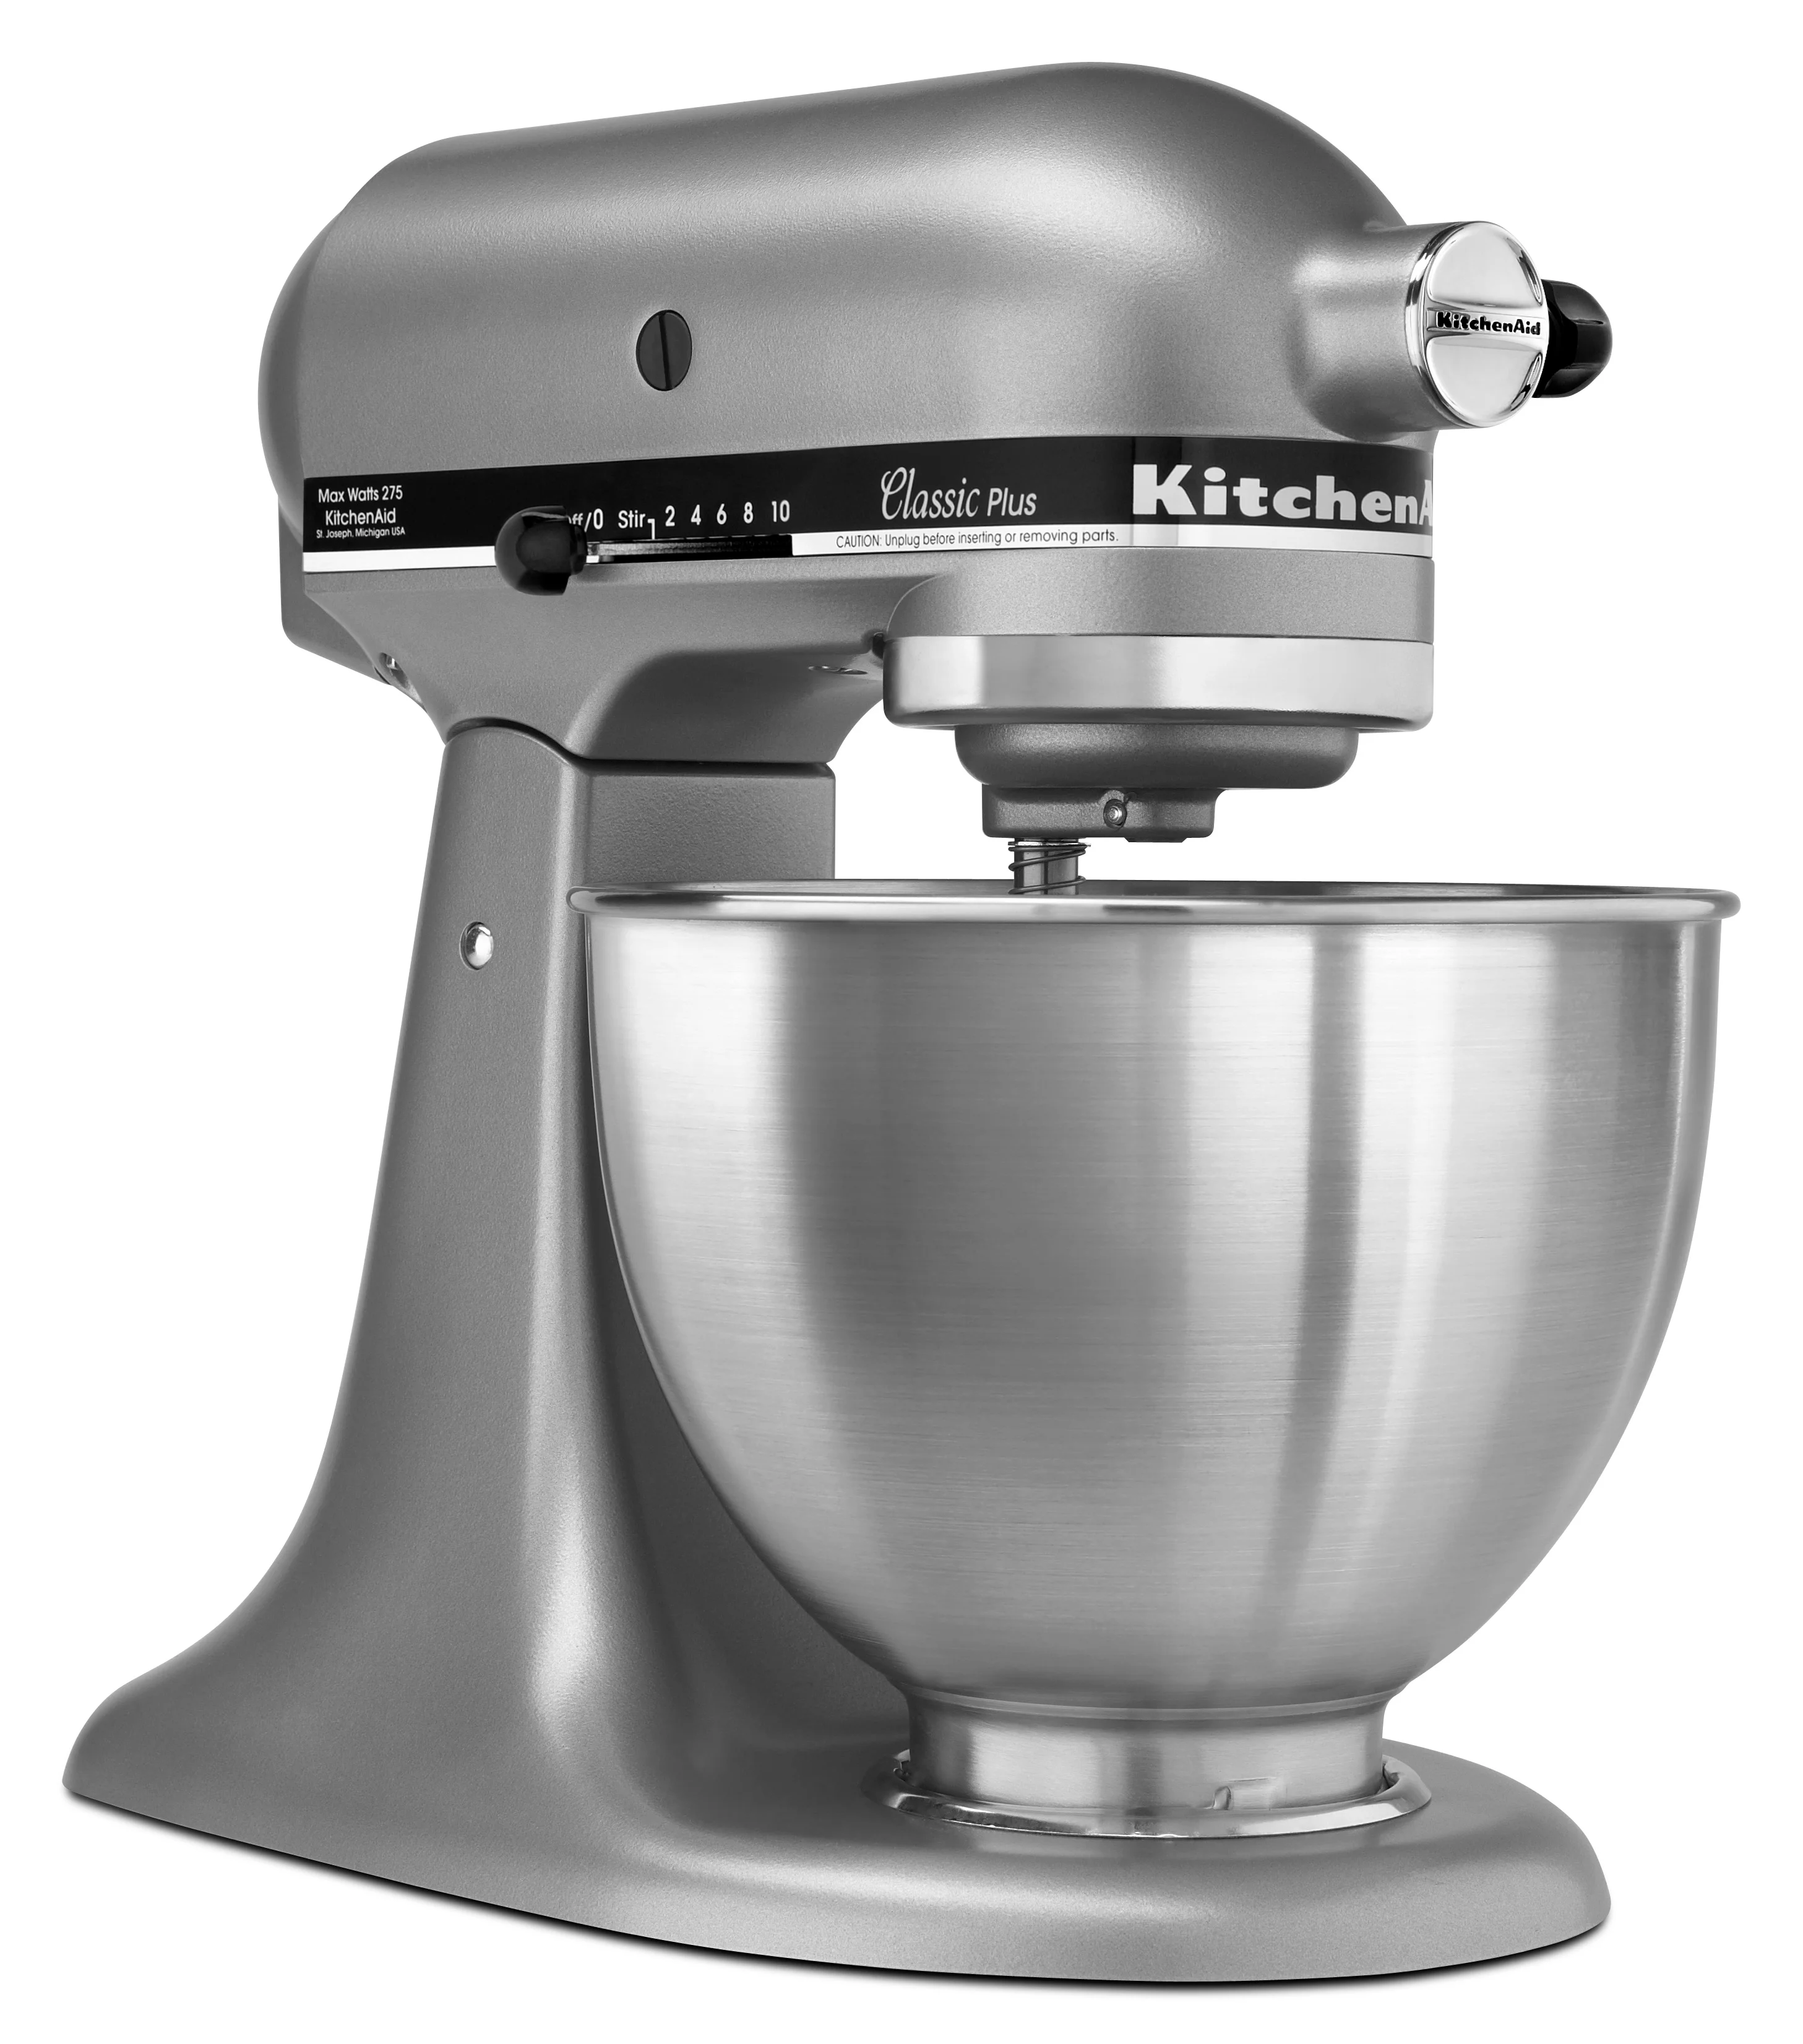 KitchenAid Classic Series 4.5qt Tilt-head Stand Mixer - White for